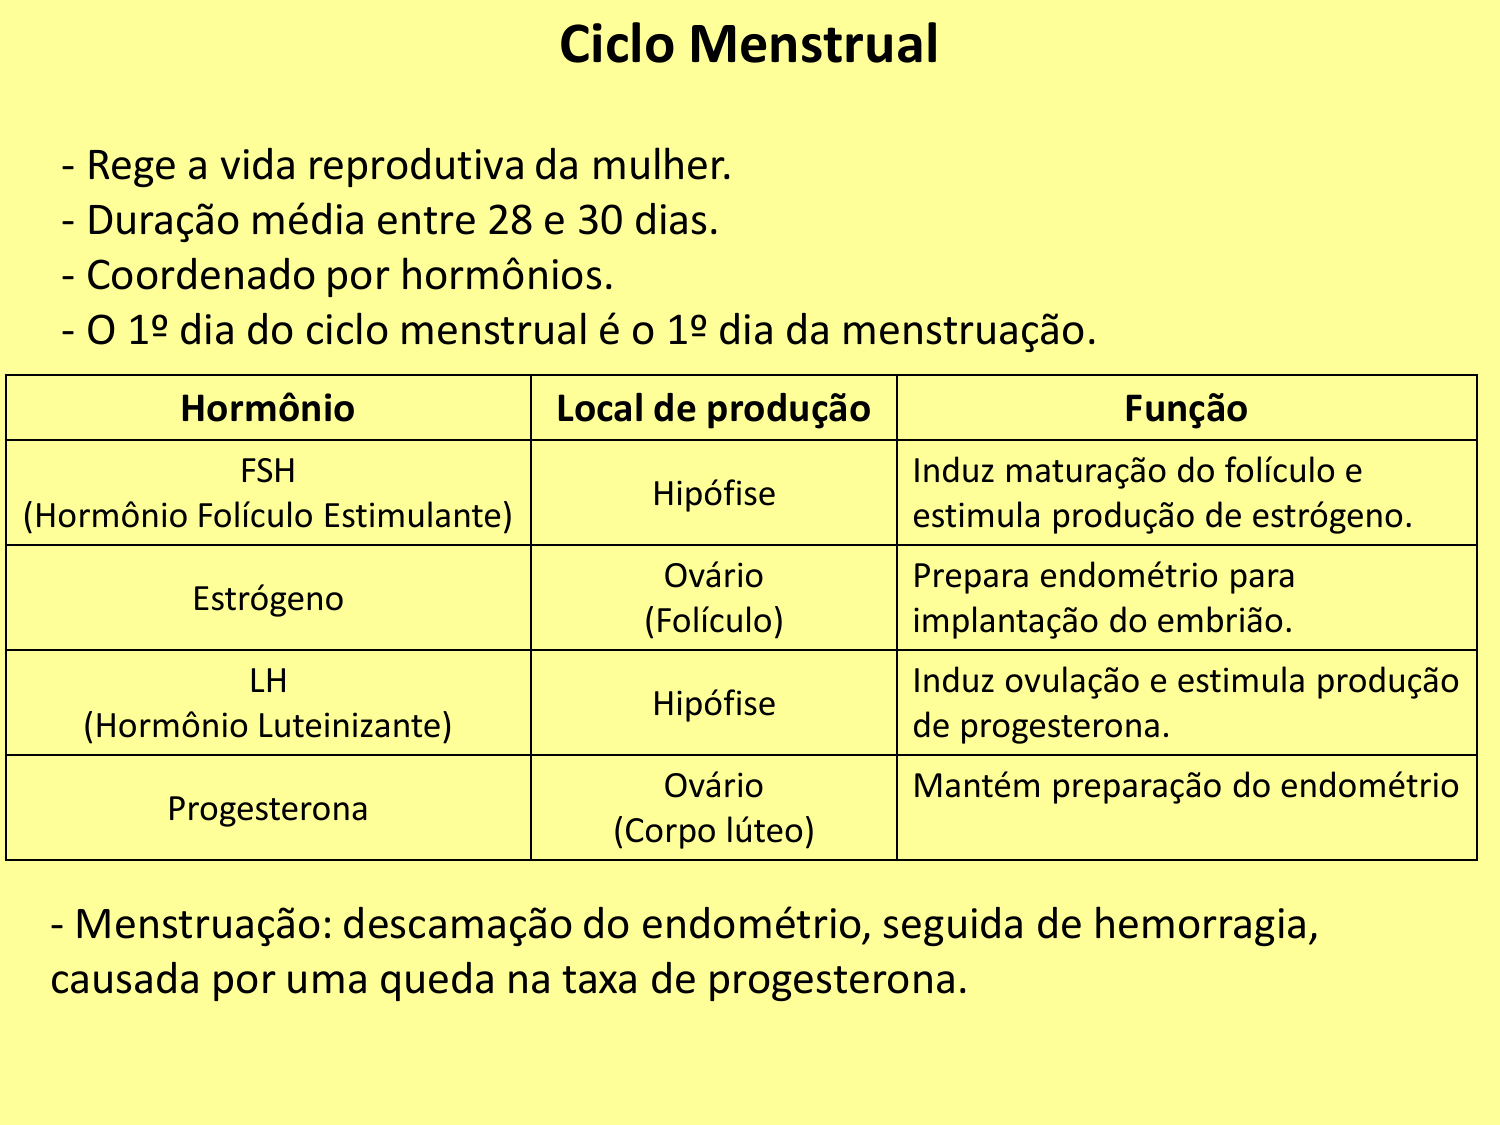 Ciclo menstrual día a día